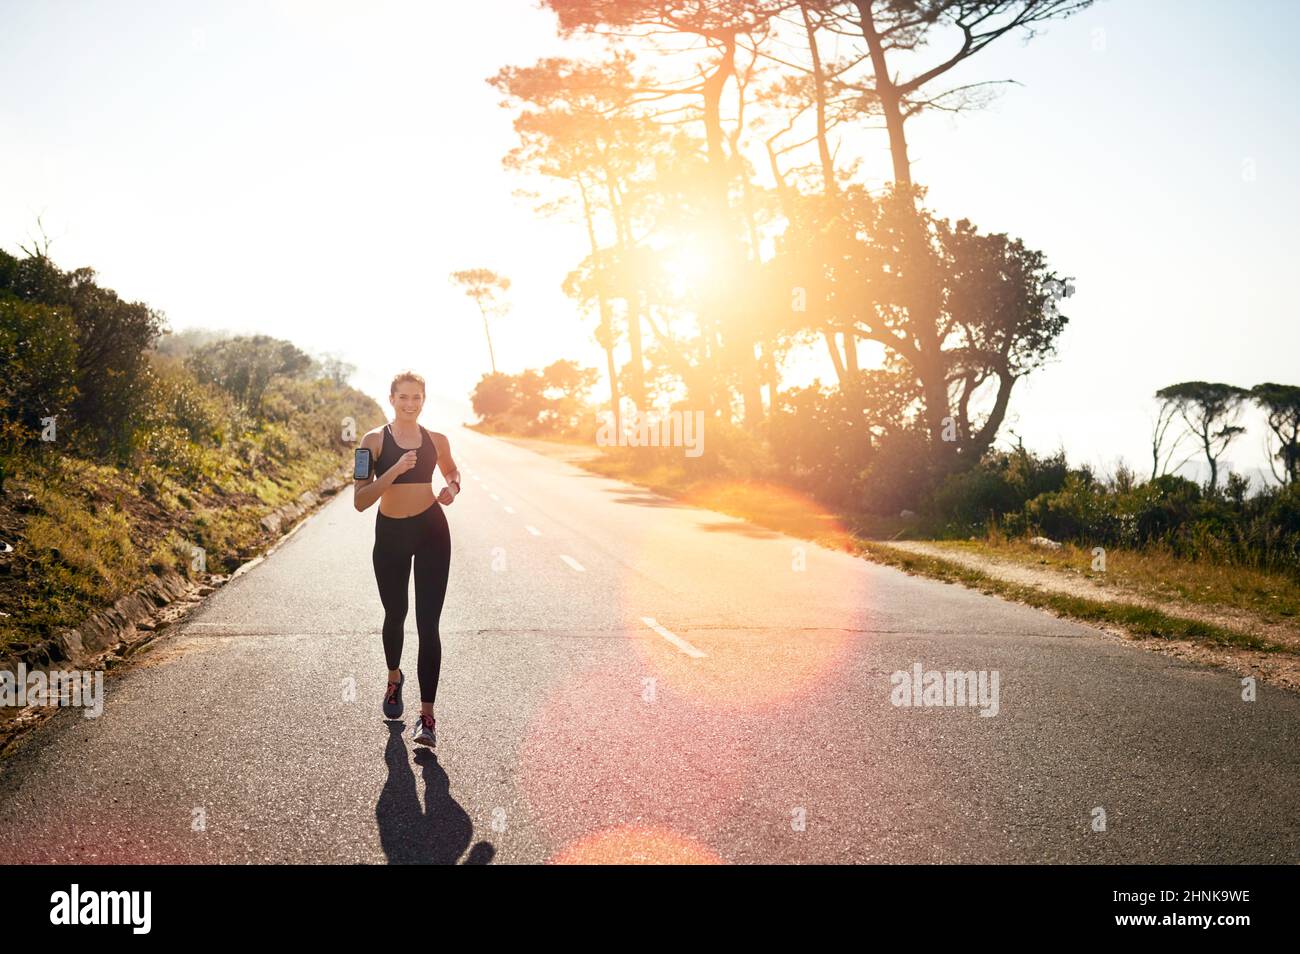 Corre para una quemadura corporal completa. Foto de una mujer joven en forma que va a correr al aire libre. Foto de stock